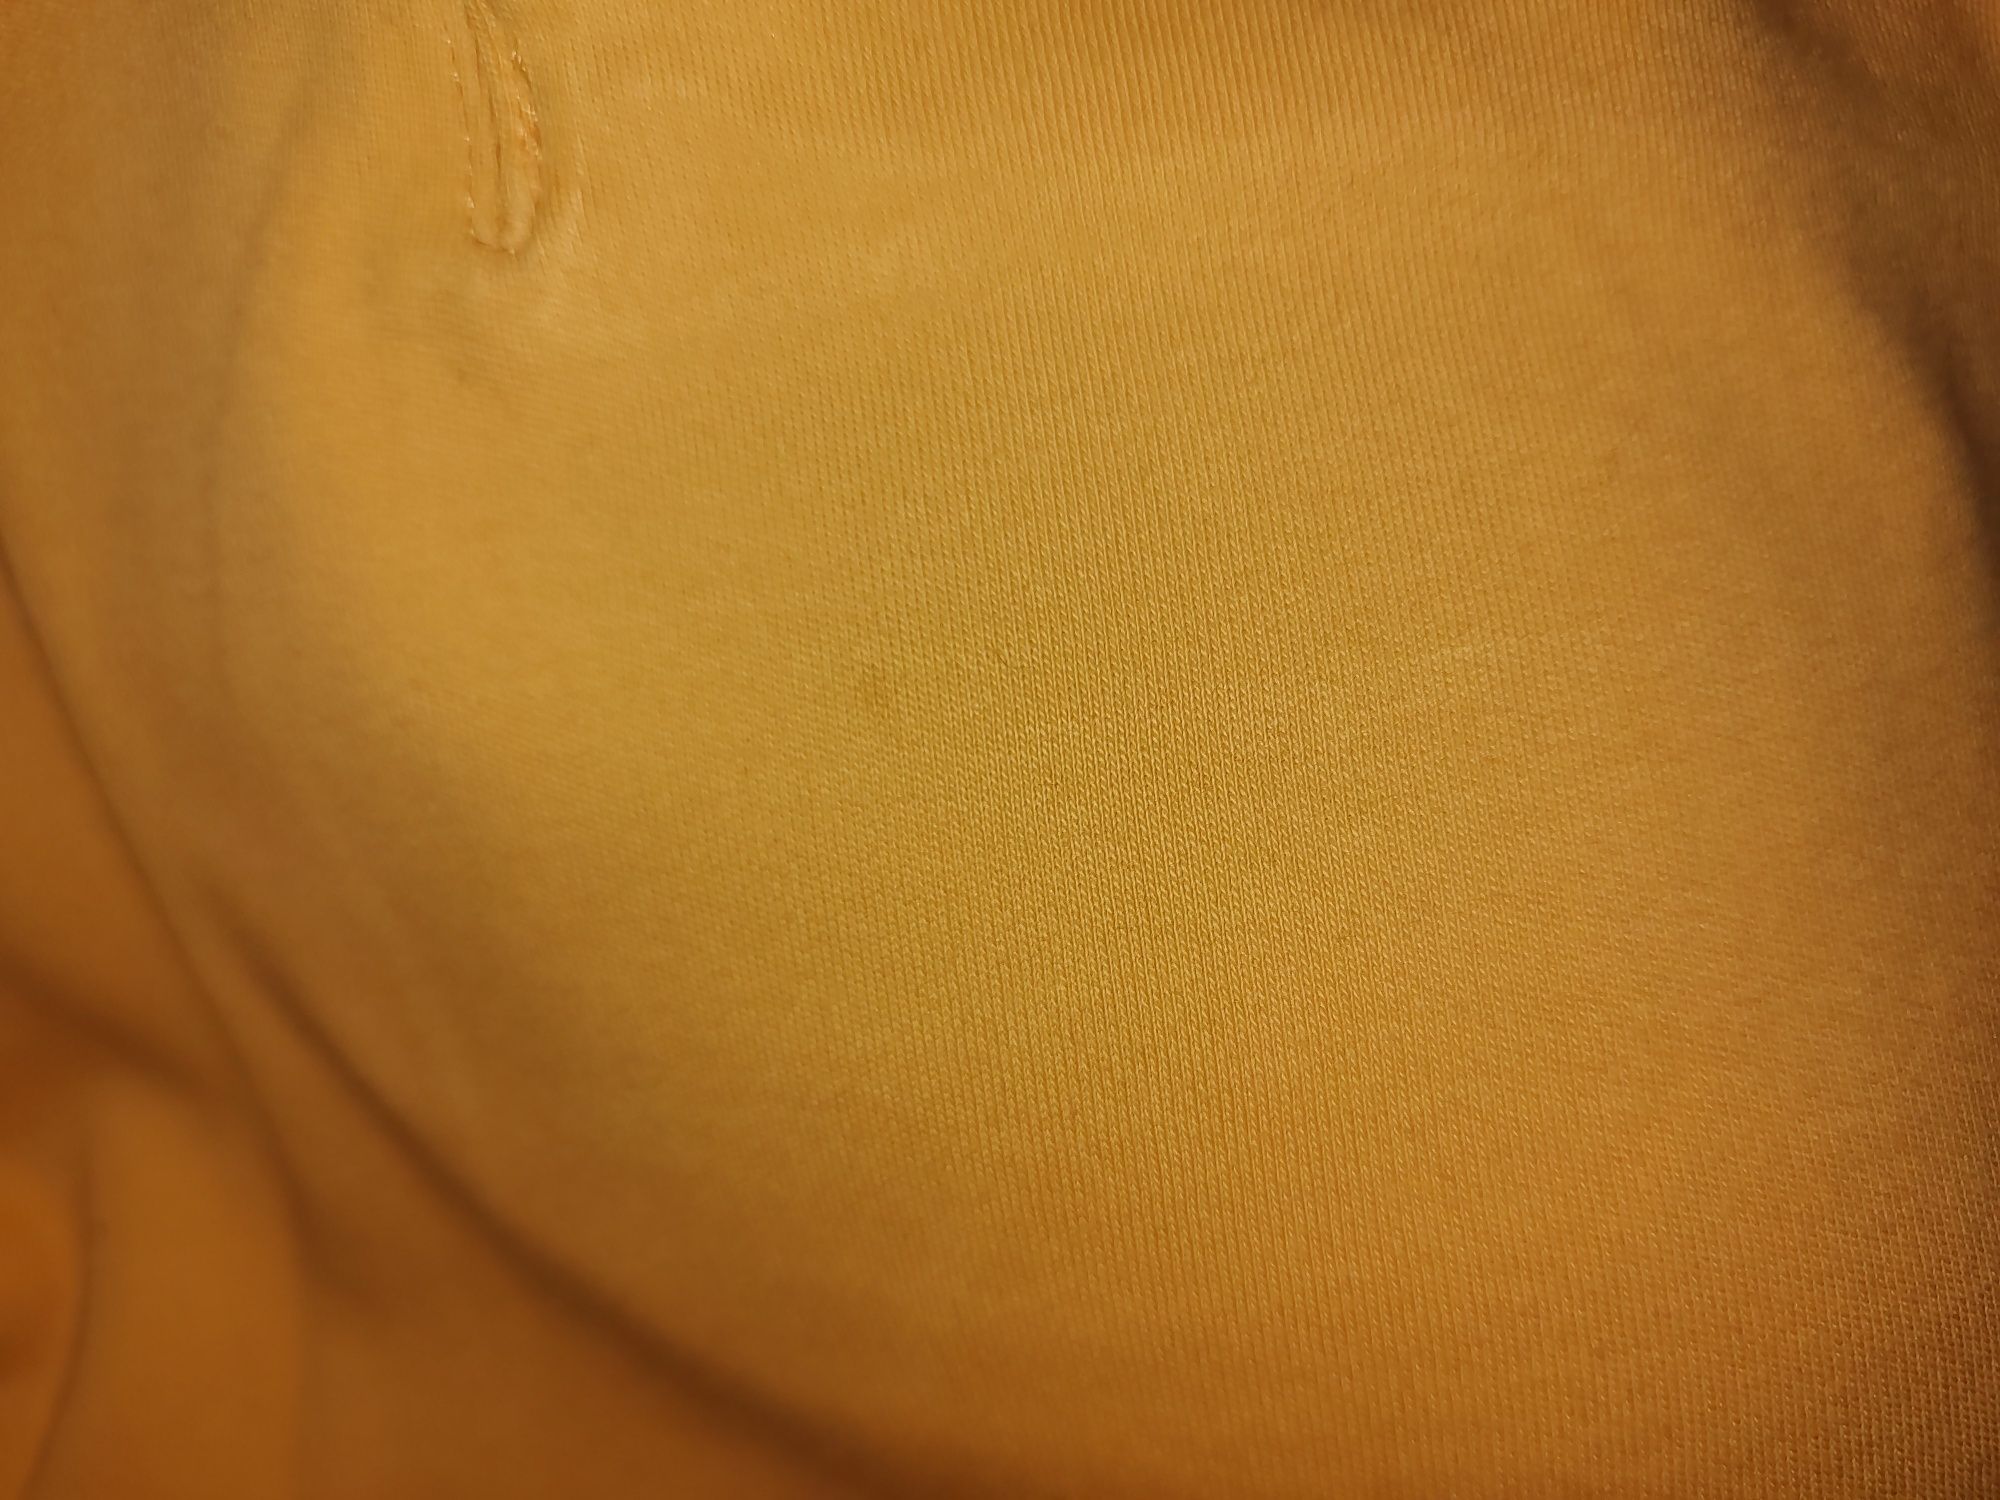 Pomarańczowa bluzka z krótkim rękawem i kieszonką ZARA S/36 bawełna